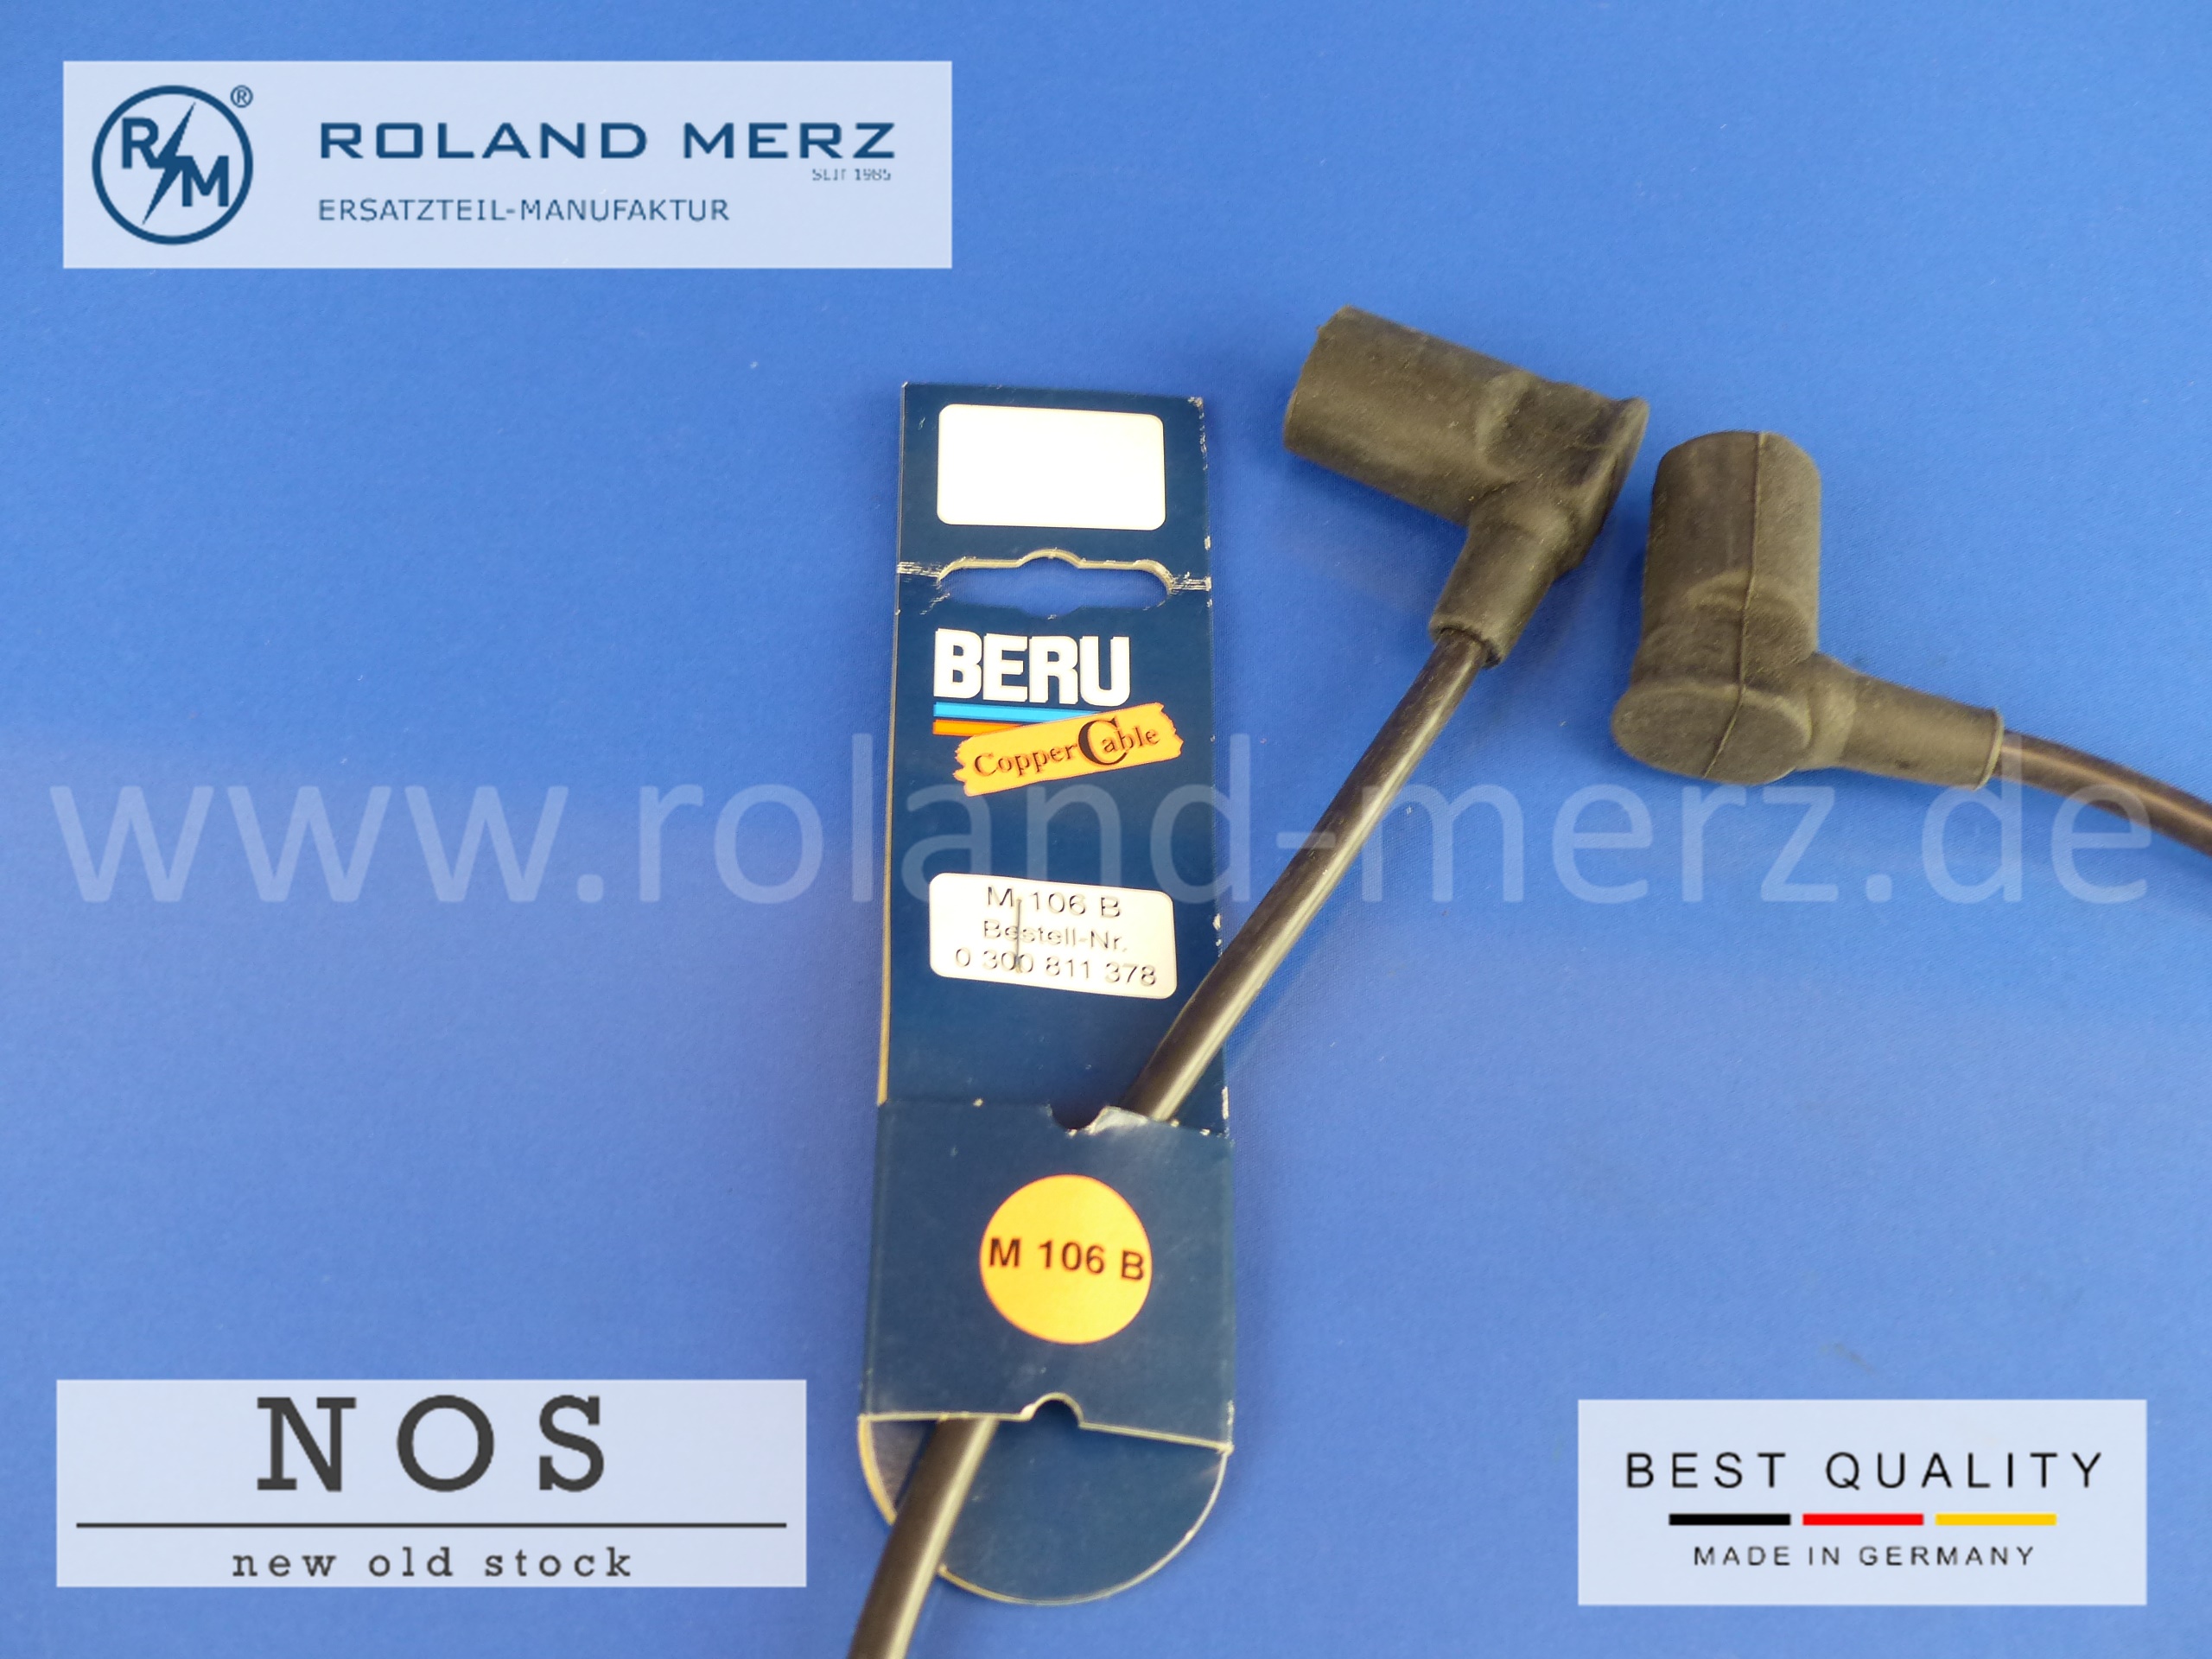 Beru Copper Cable, M 106 B, Mercedes, Zündleitung